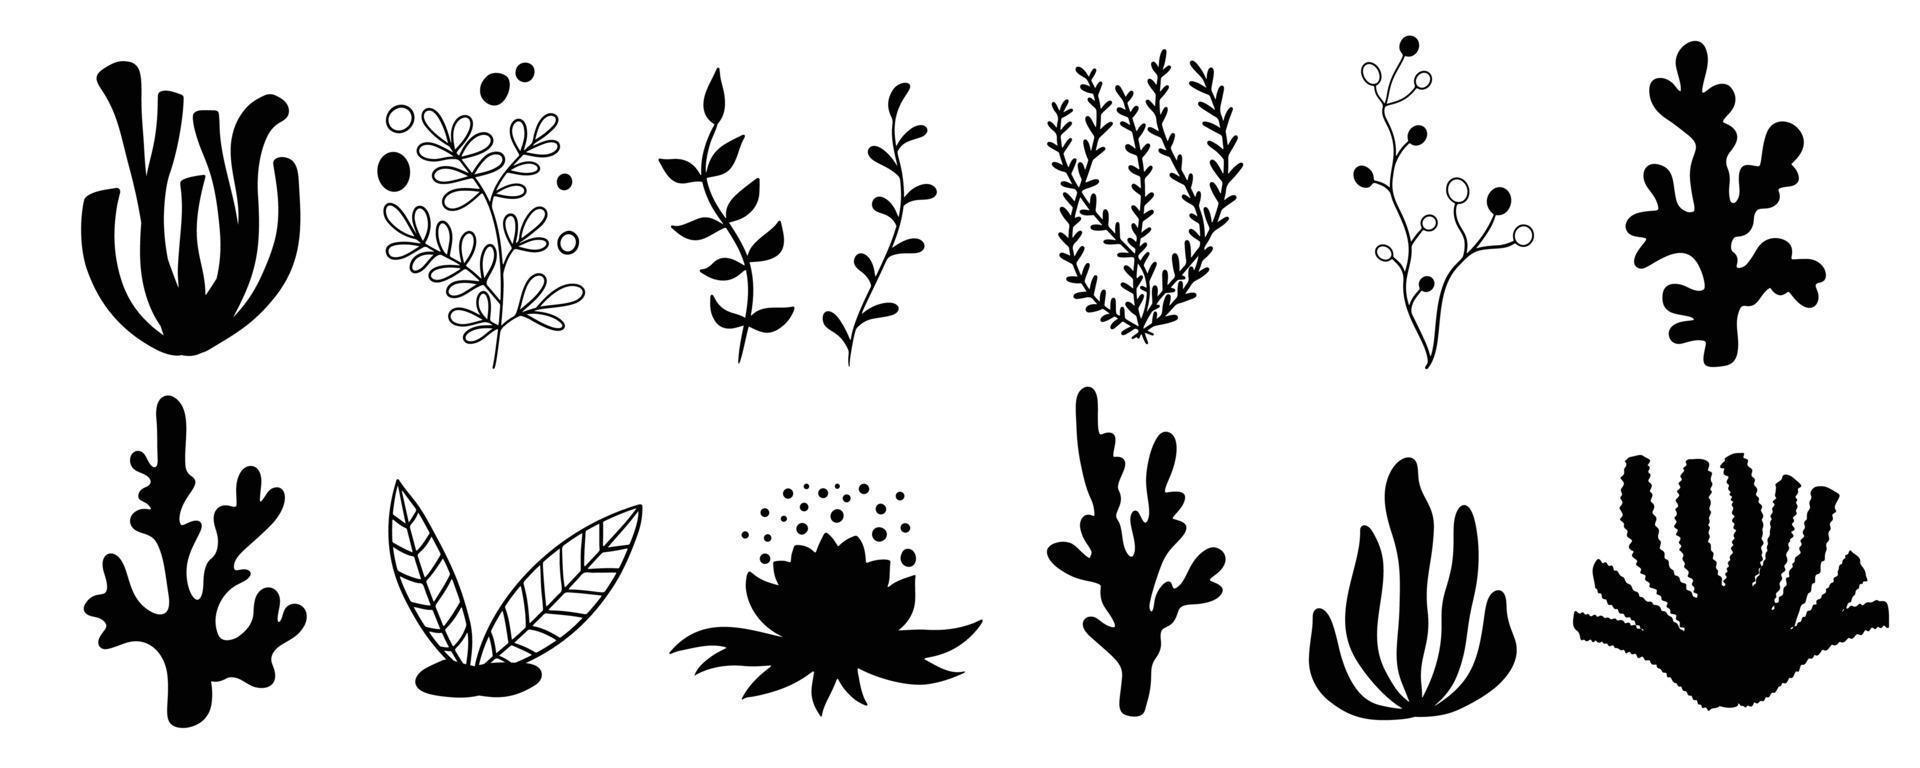 Set Meerespflanzen, Korallen und Algen. Silhouetten von Unterwasserriffpflanzen. Vektor im Cartoon-Stil.